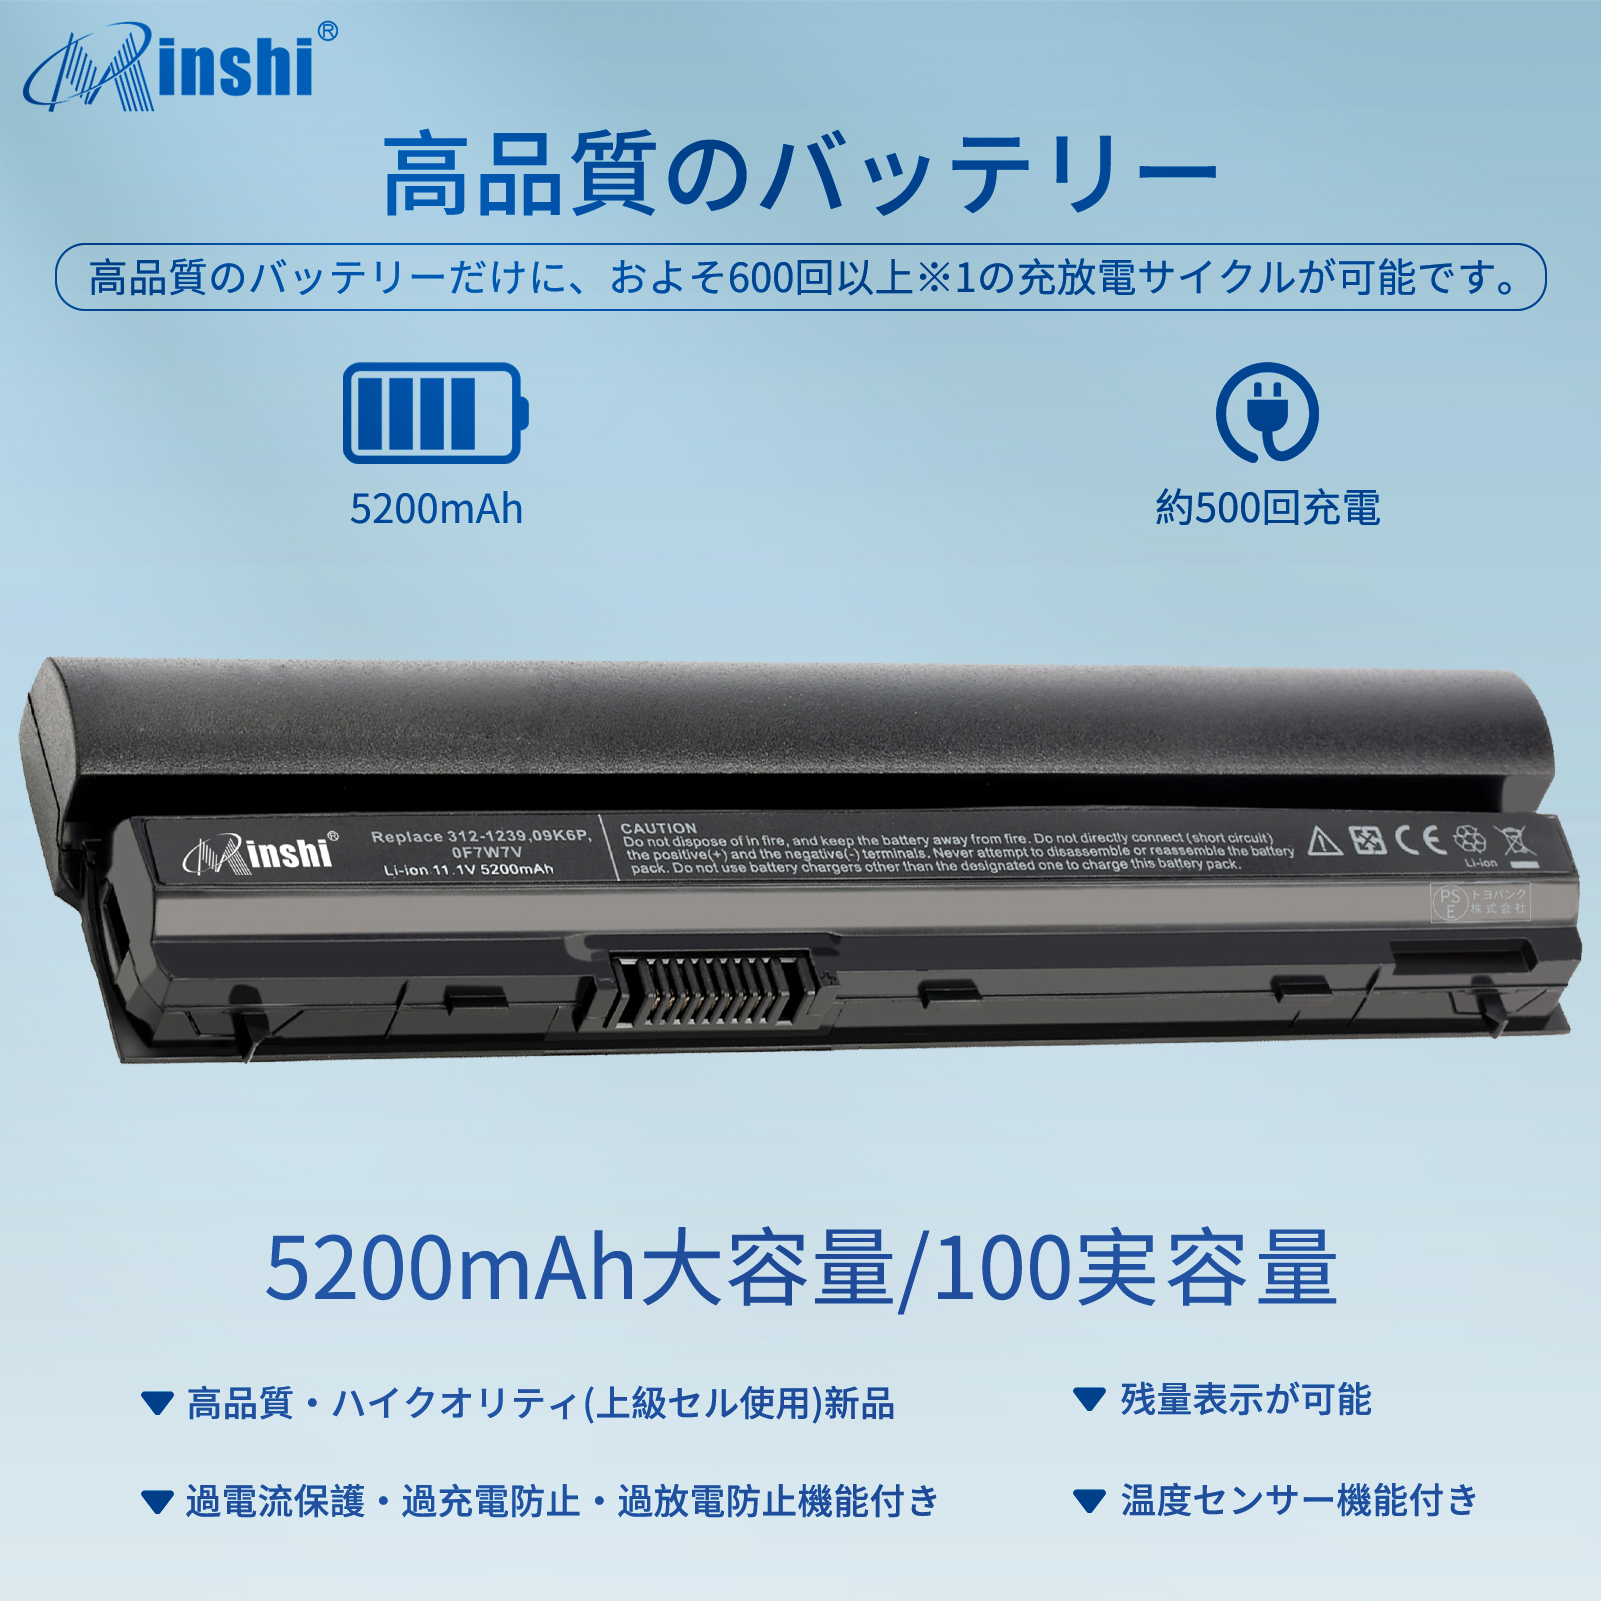 DELL 7FF1K Latitude E6220 E6330 E6430S E6120 E6320  対応用 minshi 高性能 ノートパソコン互換バッテリー